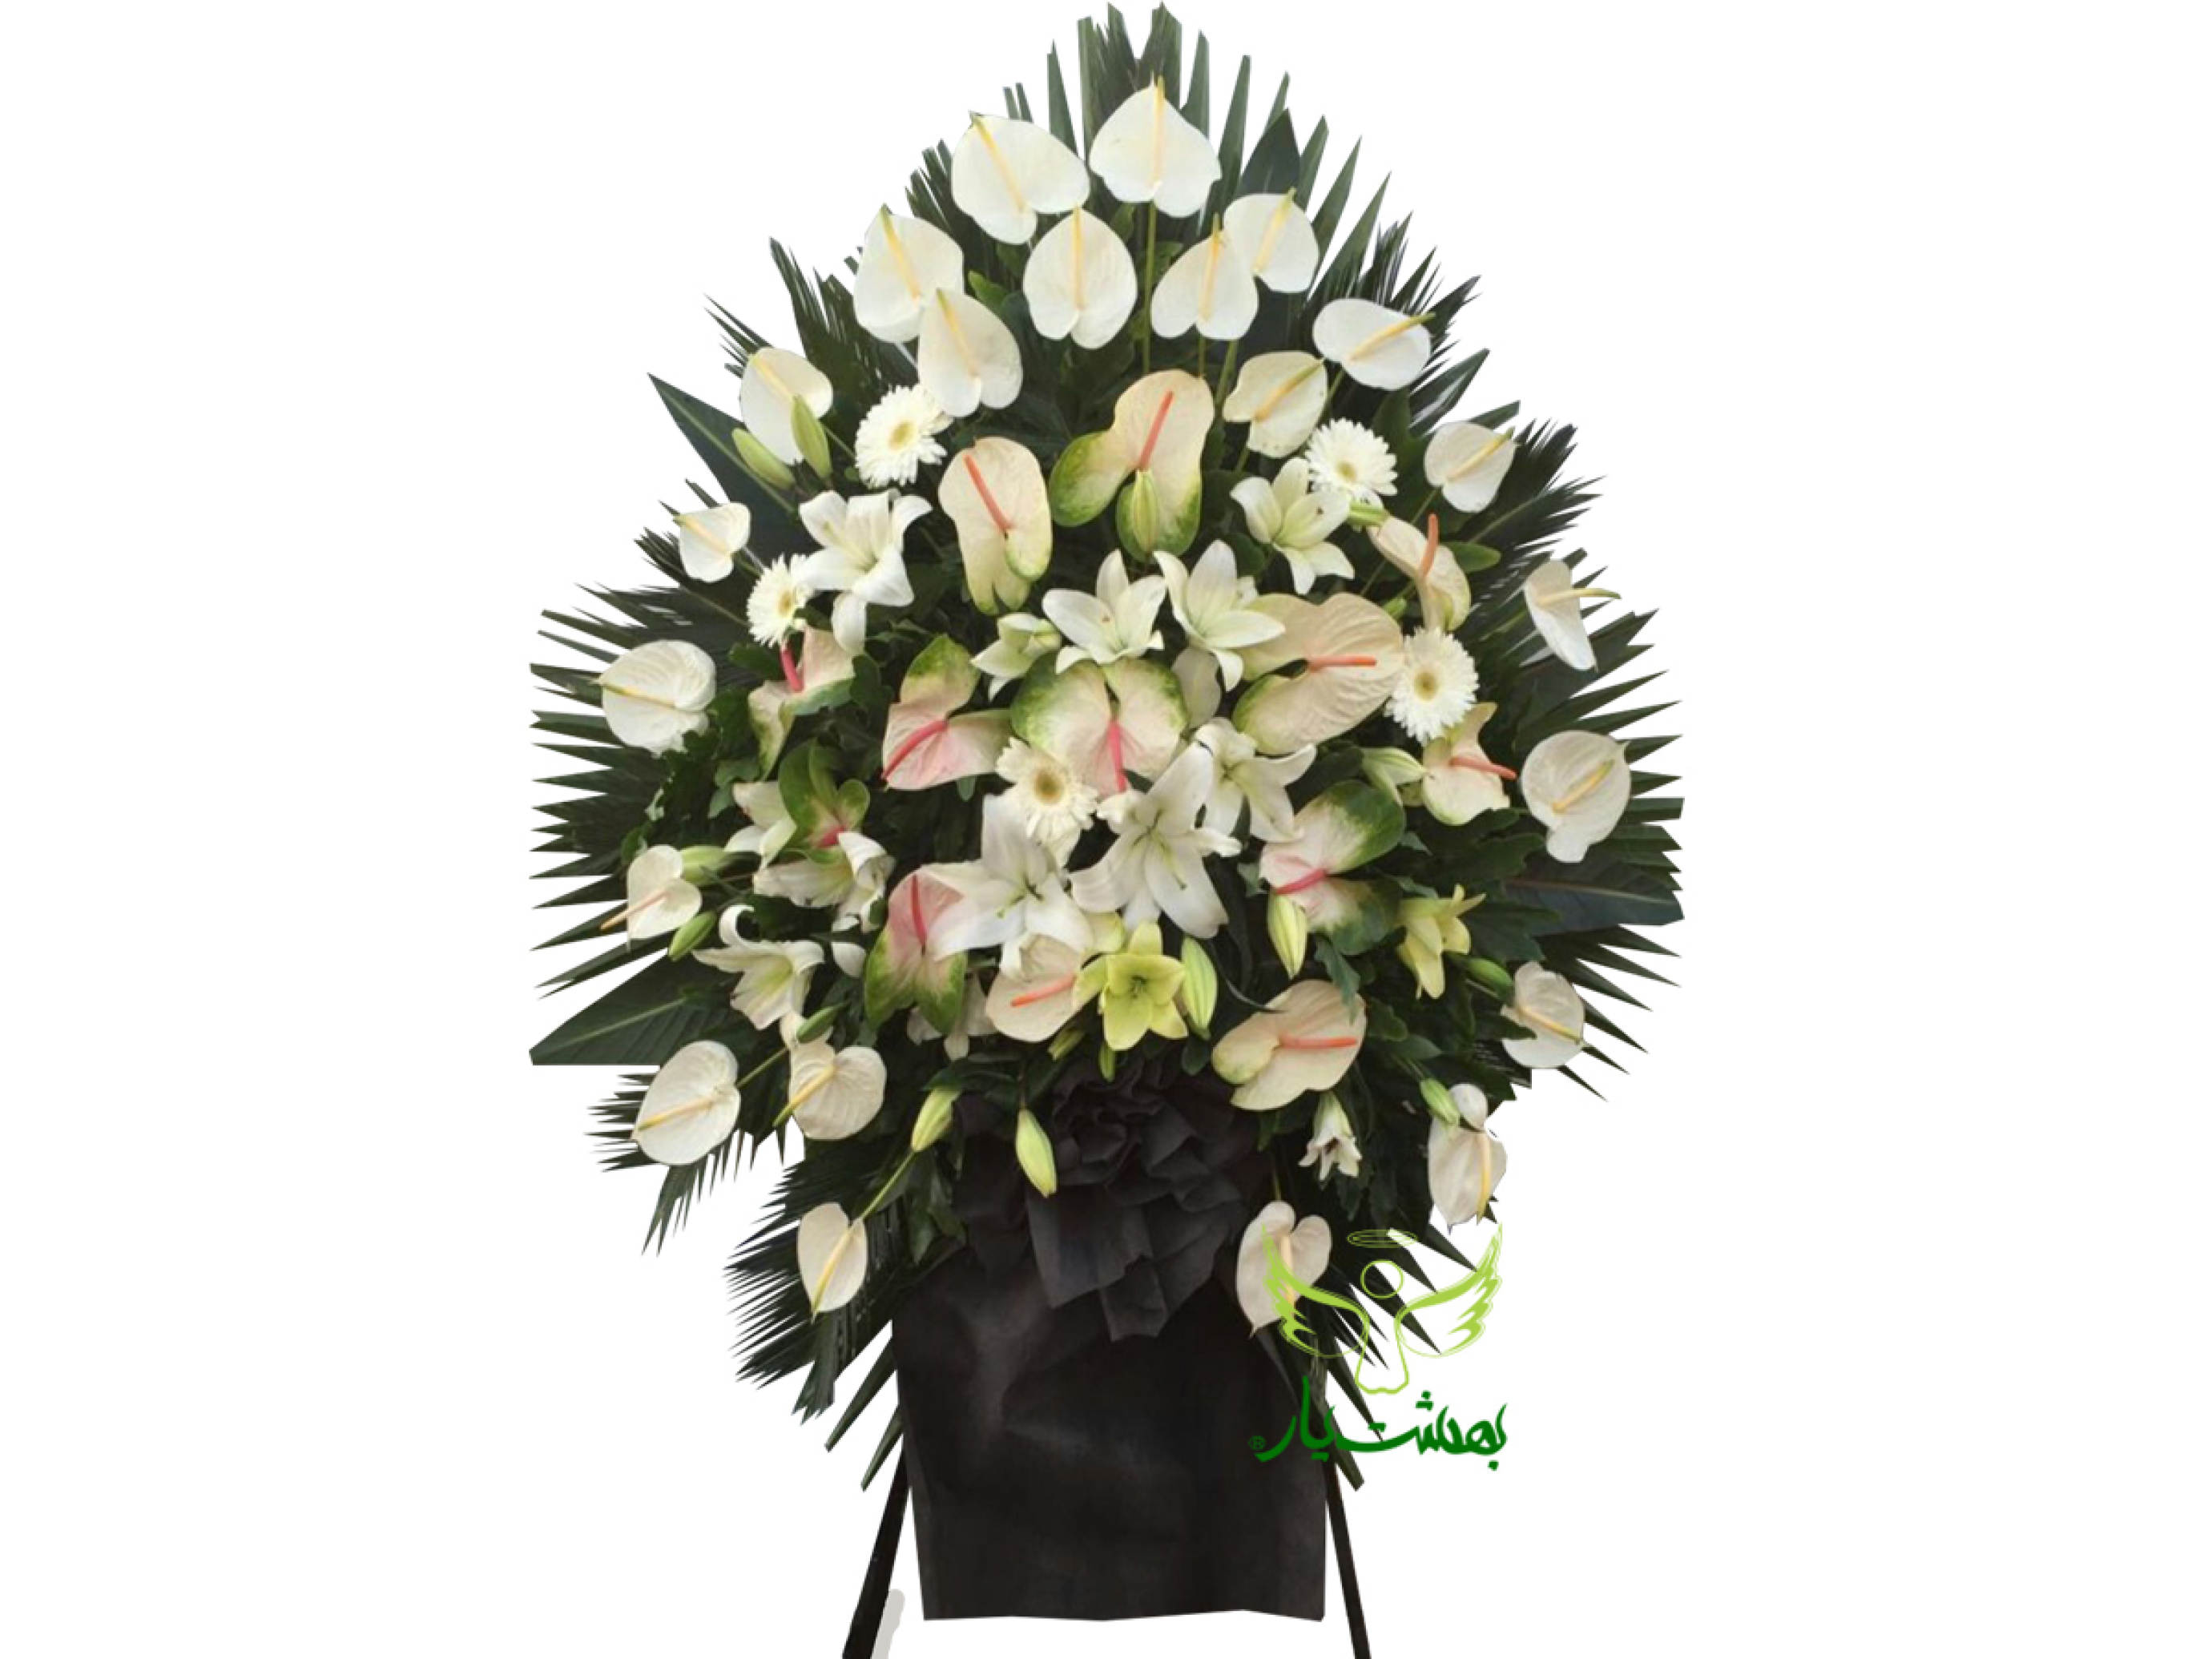  خرید آنلاین تاج گل سفید مراسم ختم برای بهشت زهرا در بهشت یار 